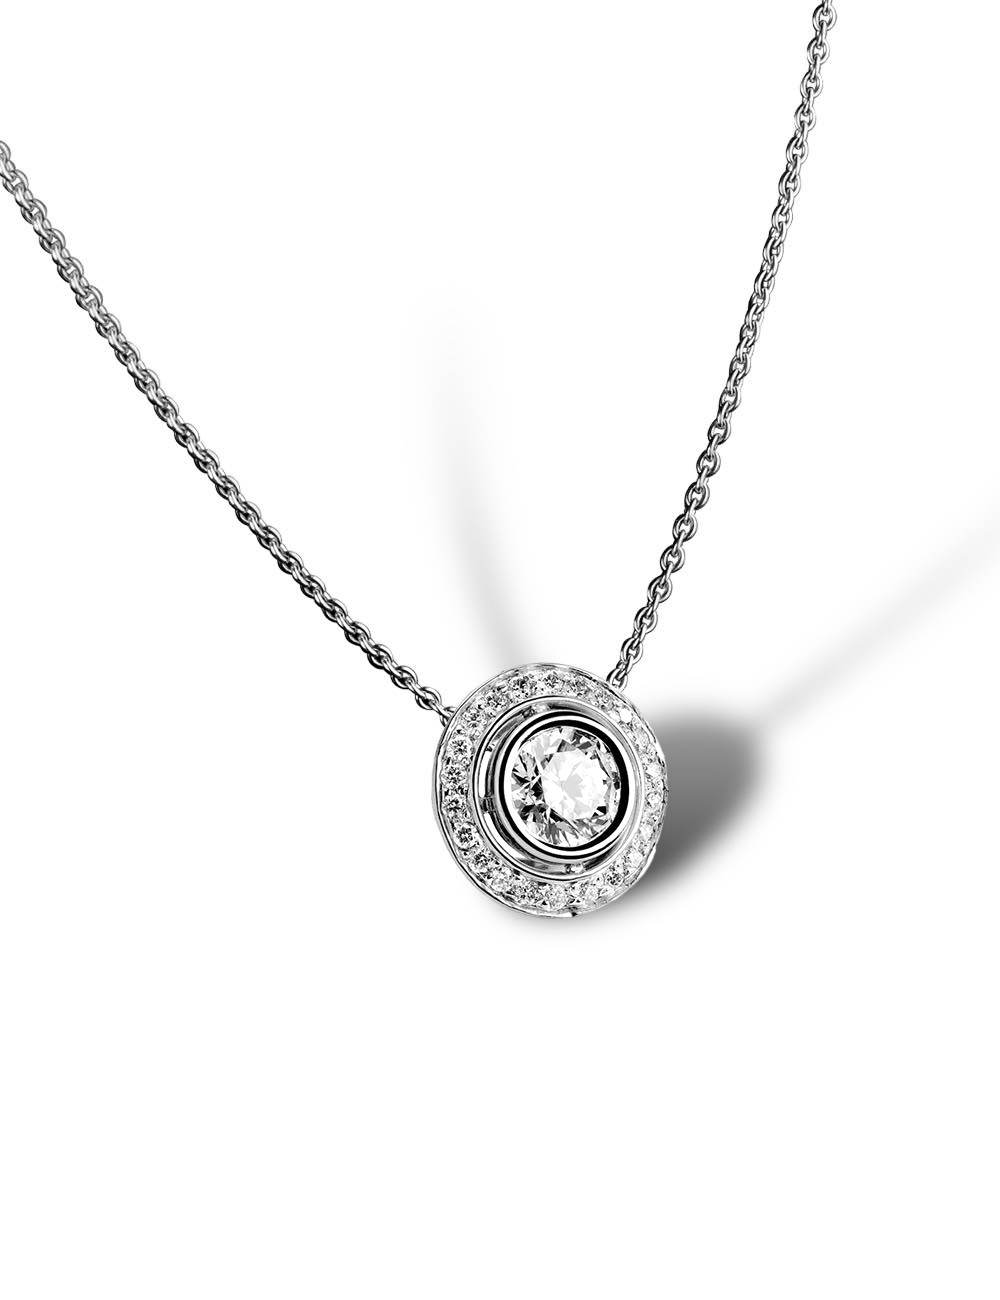 Collier de luxe 0.40ct diamant blanc, halo éclatant, éthique. Élégance intemporelle et raffinée.